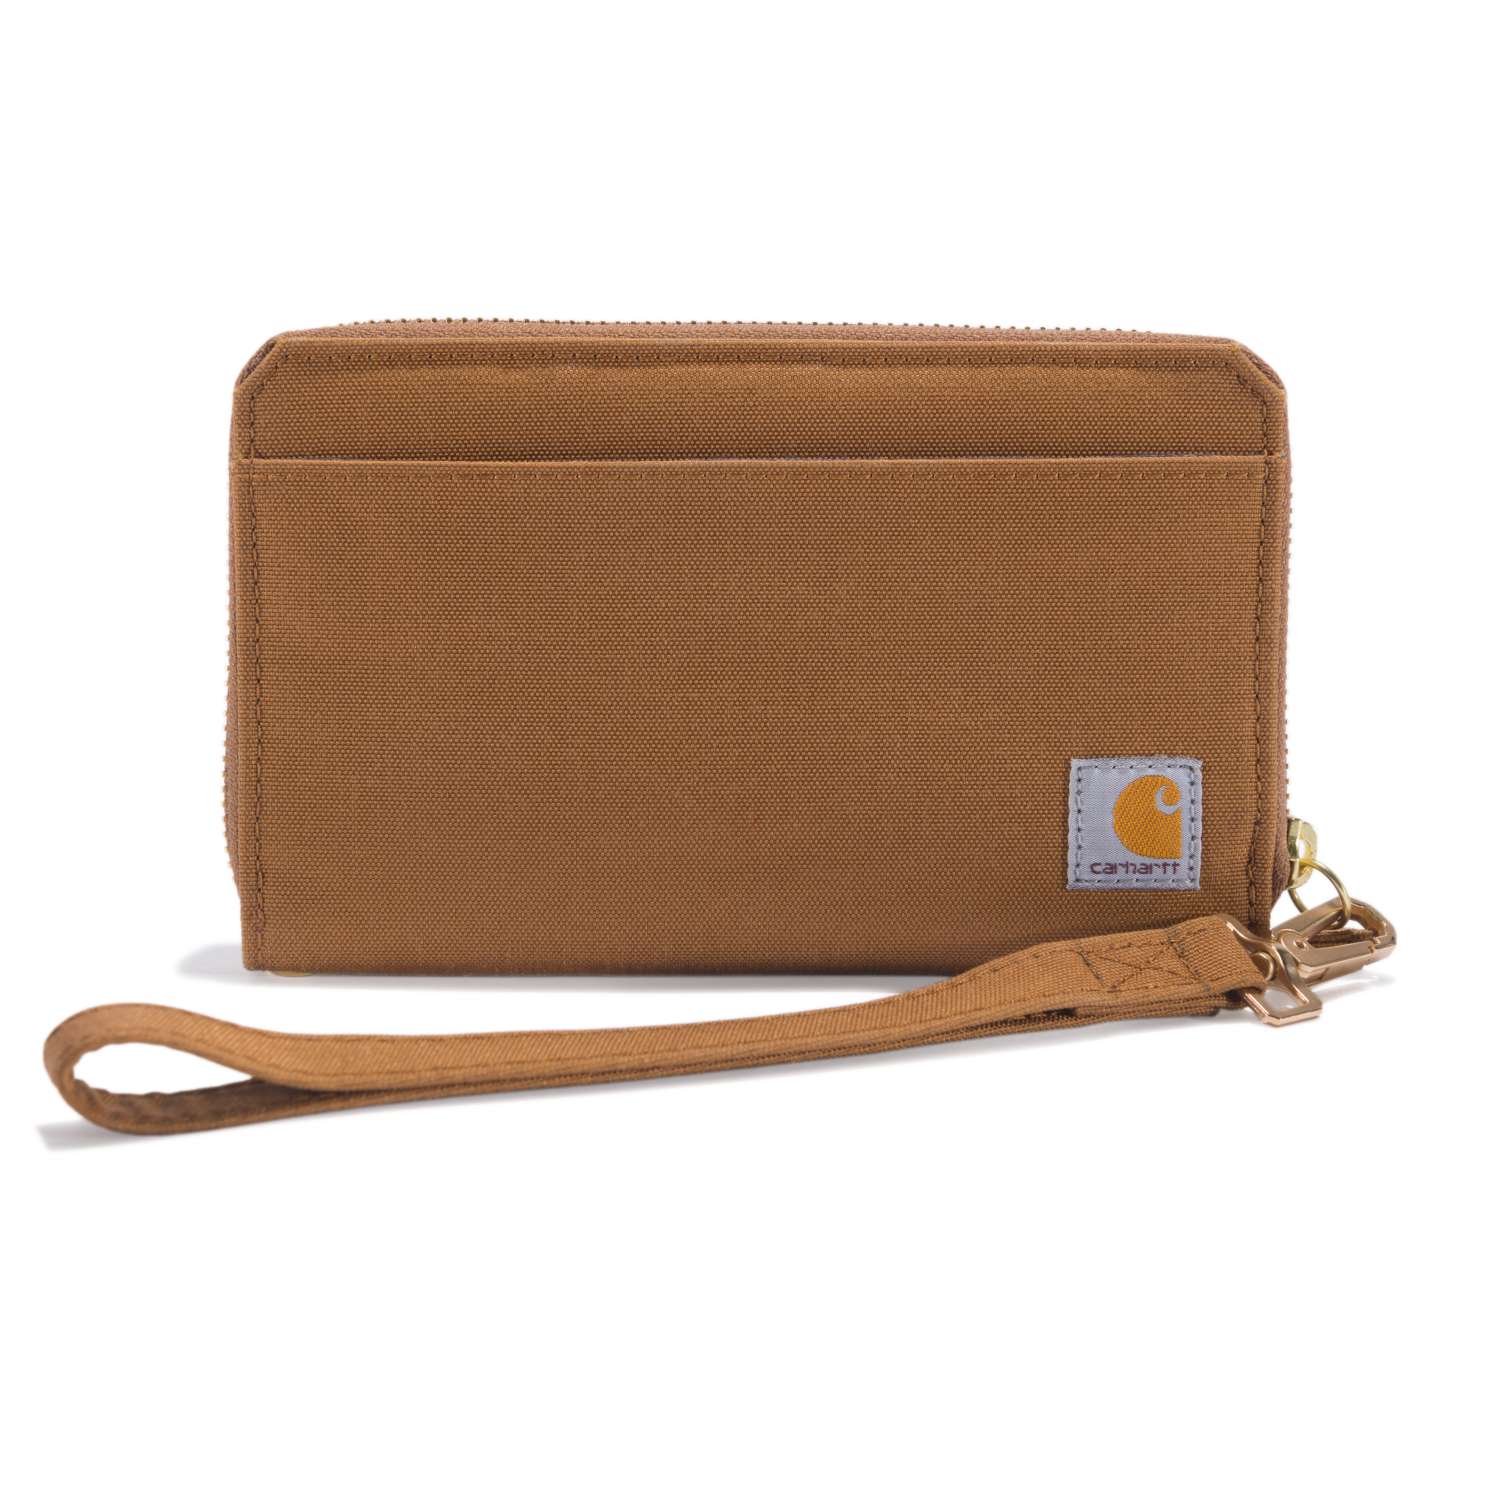 Carhartt Women's Nylon Clutch Wallet Nylon Duck Lay-flat Clutch Wallet